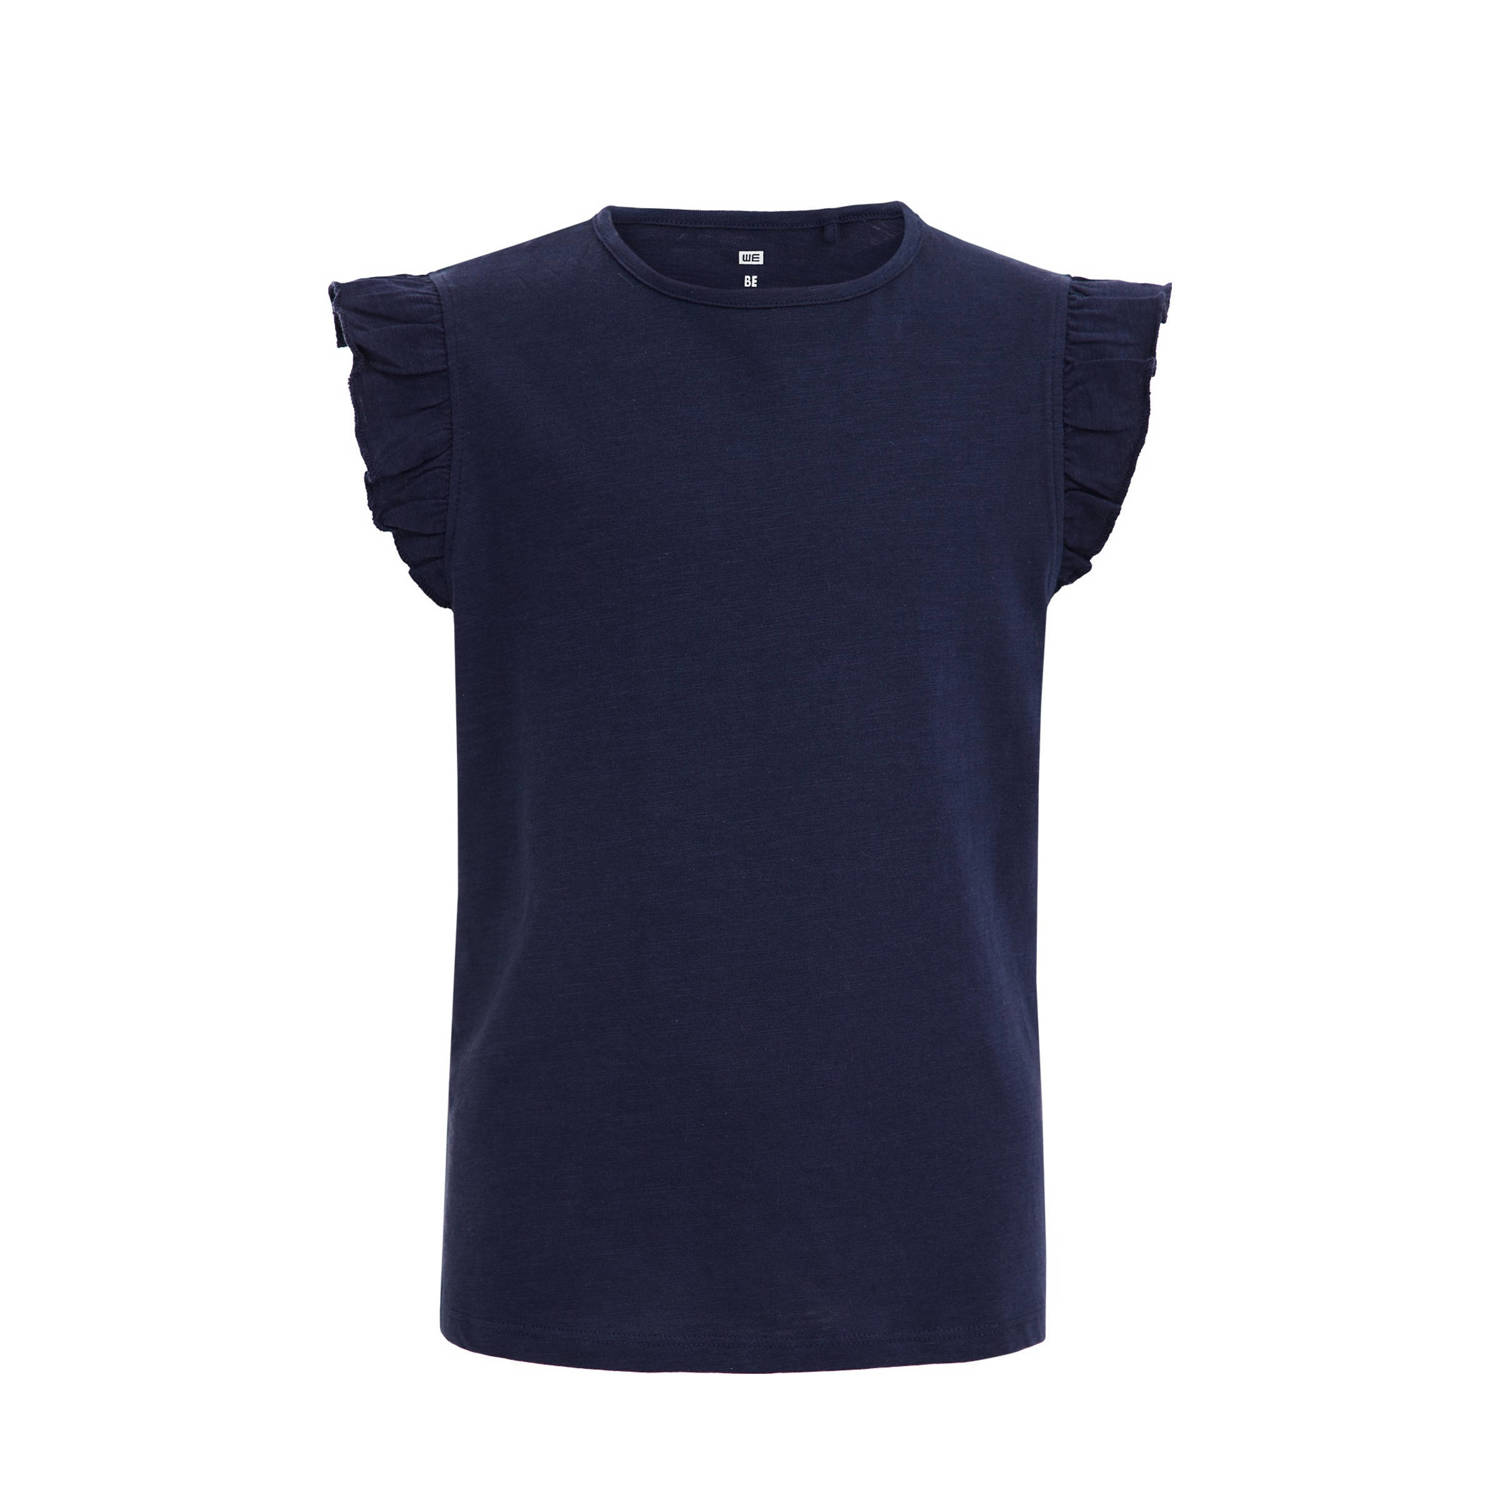 WE Fashion T-shirt donkerblauw Meisjes Katoen Ronde hals Effen 110 116